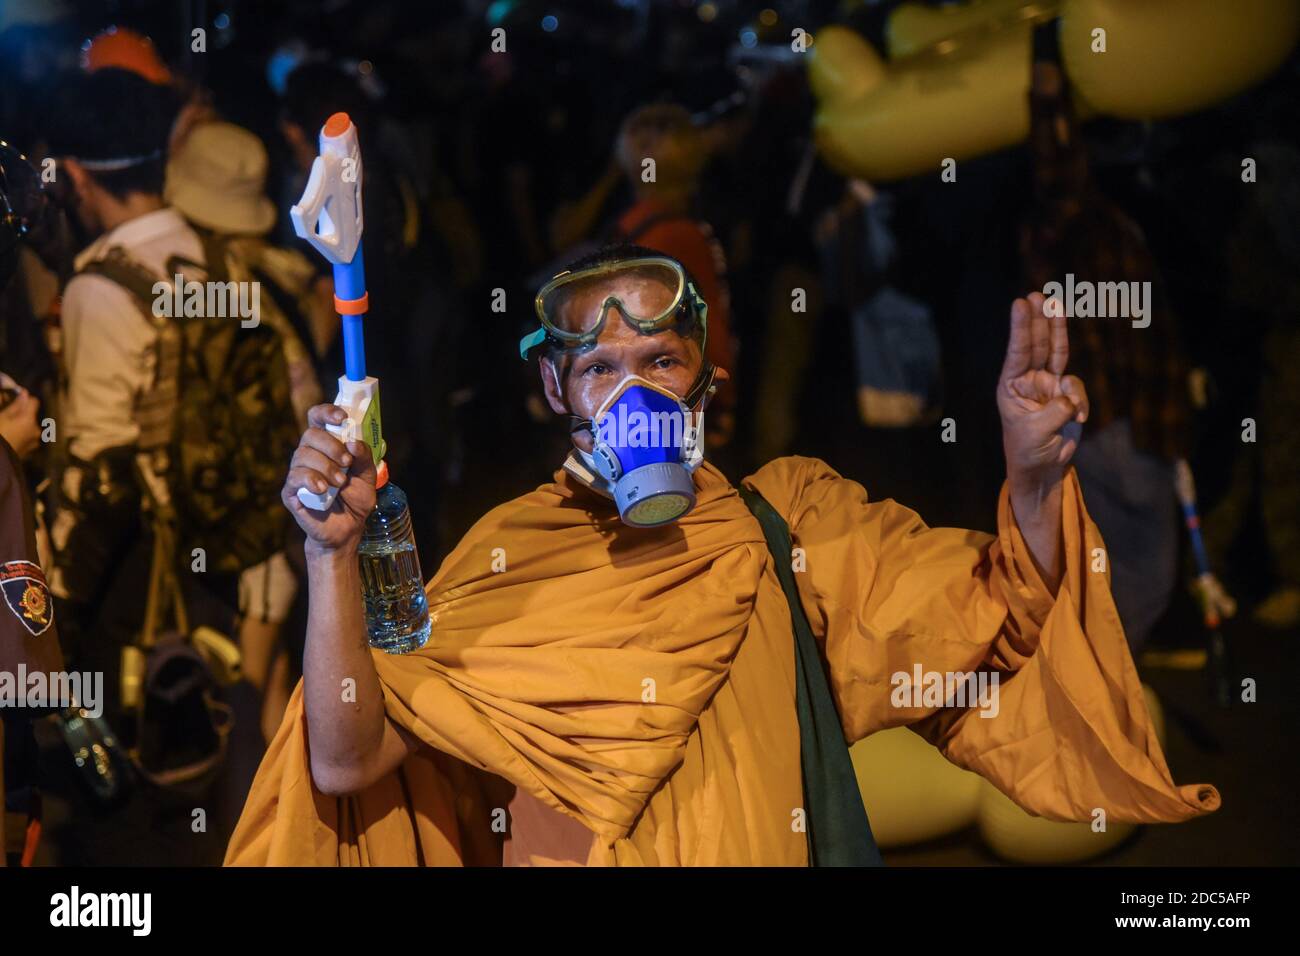 Bangkok, Thaïlande. 1er janvier 2014. Un moine bouddhiste tient les trois doigts pour saluer pendant la manifestation.des milliers de manifestants pro-démocratie ont convergé à l'intersection de Ratchaprasong pour réclamer les changements à la constitution de la Thaïlande. Après l'émeute, la police a utilisé des canons à eau et des gaz lacrymogènes pour repousser les manifestants pro-démocratie au Parlement. Credit: Yuttachai Kongprasert/SOPA Images/ZUMA Wire/Alay Live News Banque D'Images